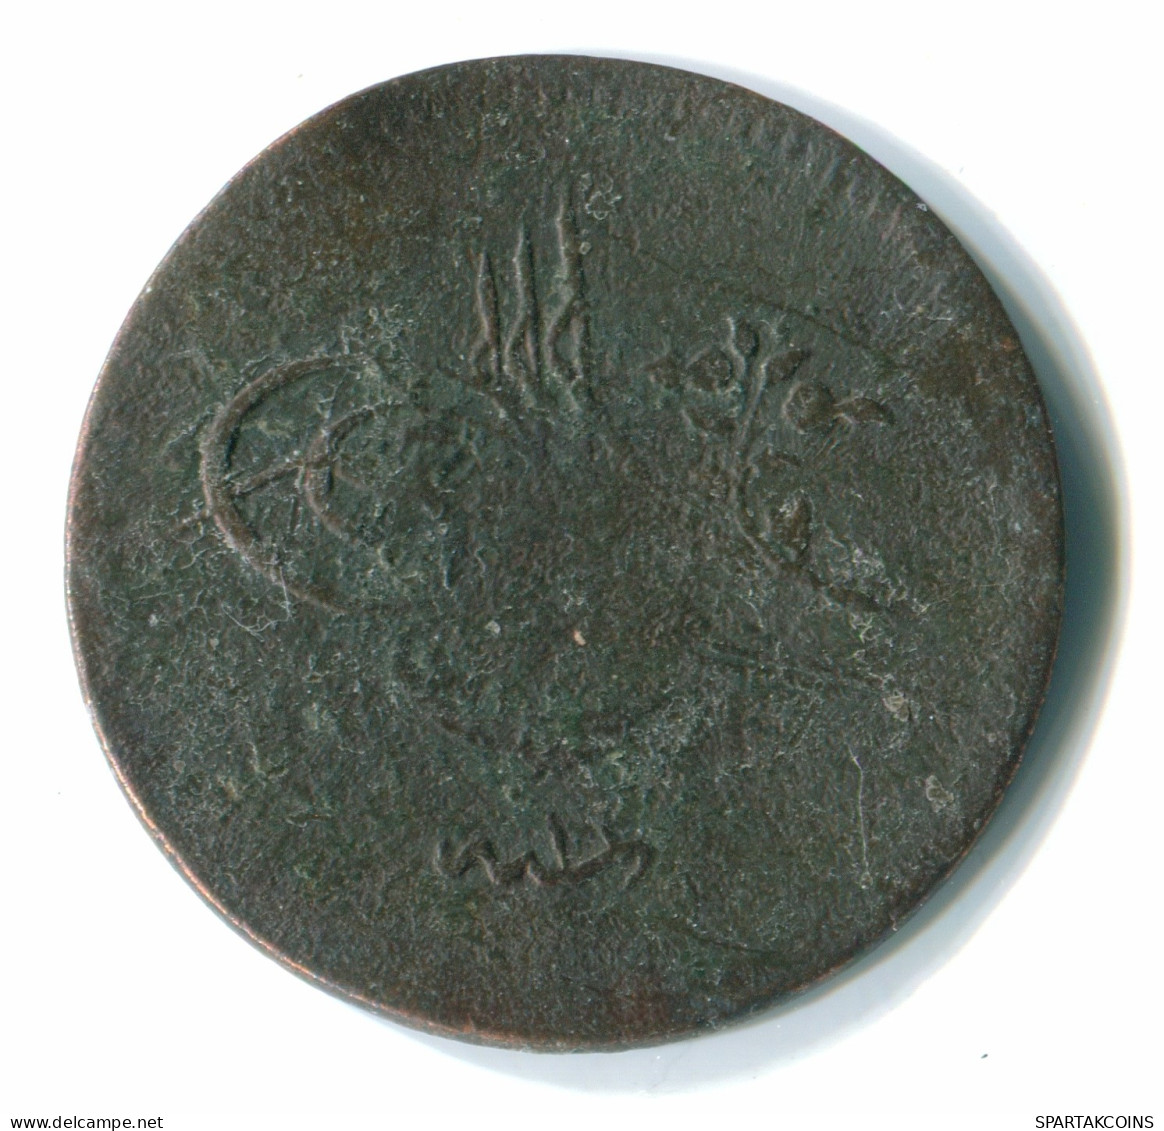 ISLAMIC OTTOMAN EMPIRE Abdulmecid I 5 Para AH1255 Islamic Coin #MED10105.7.F.A - Islamitisch